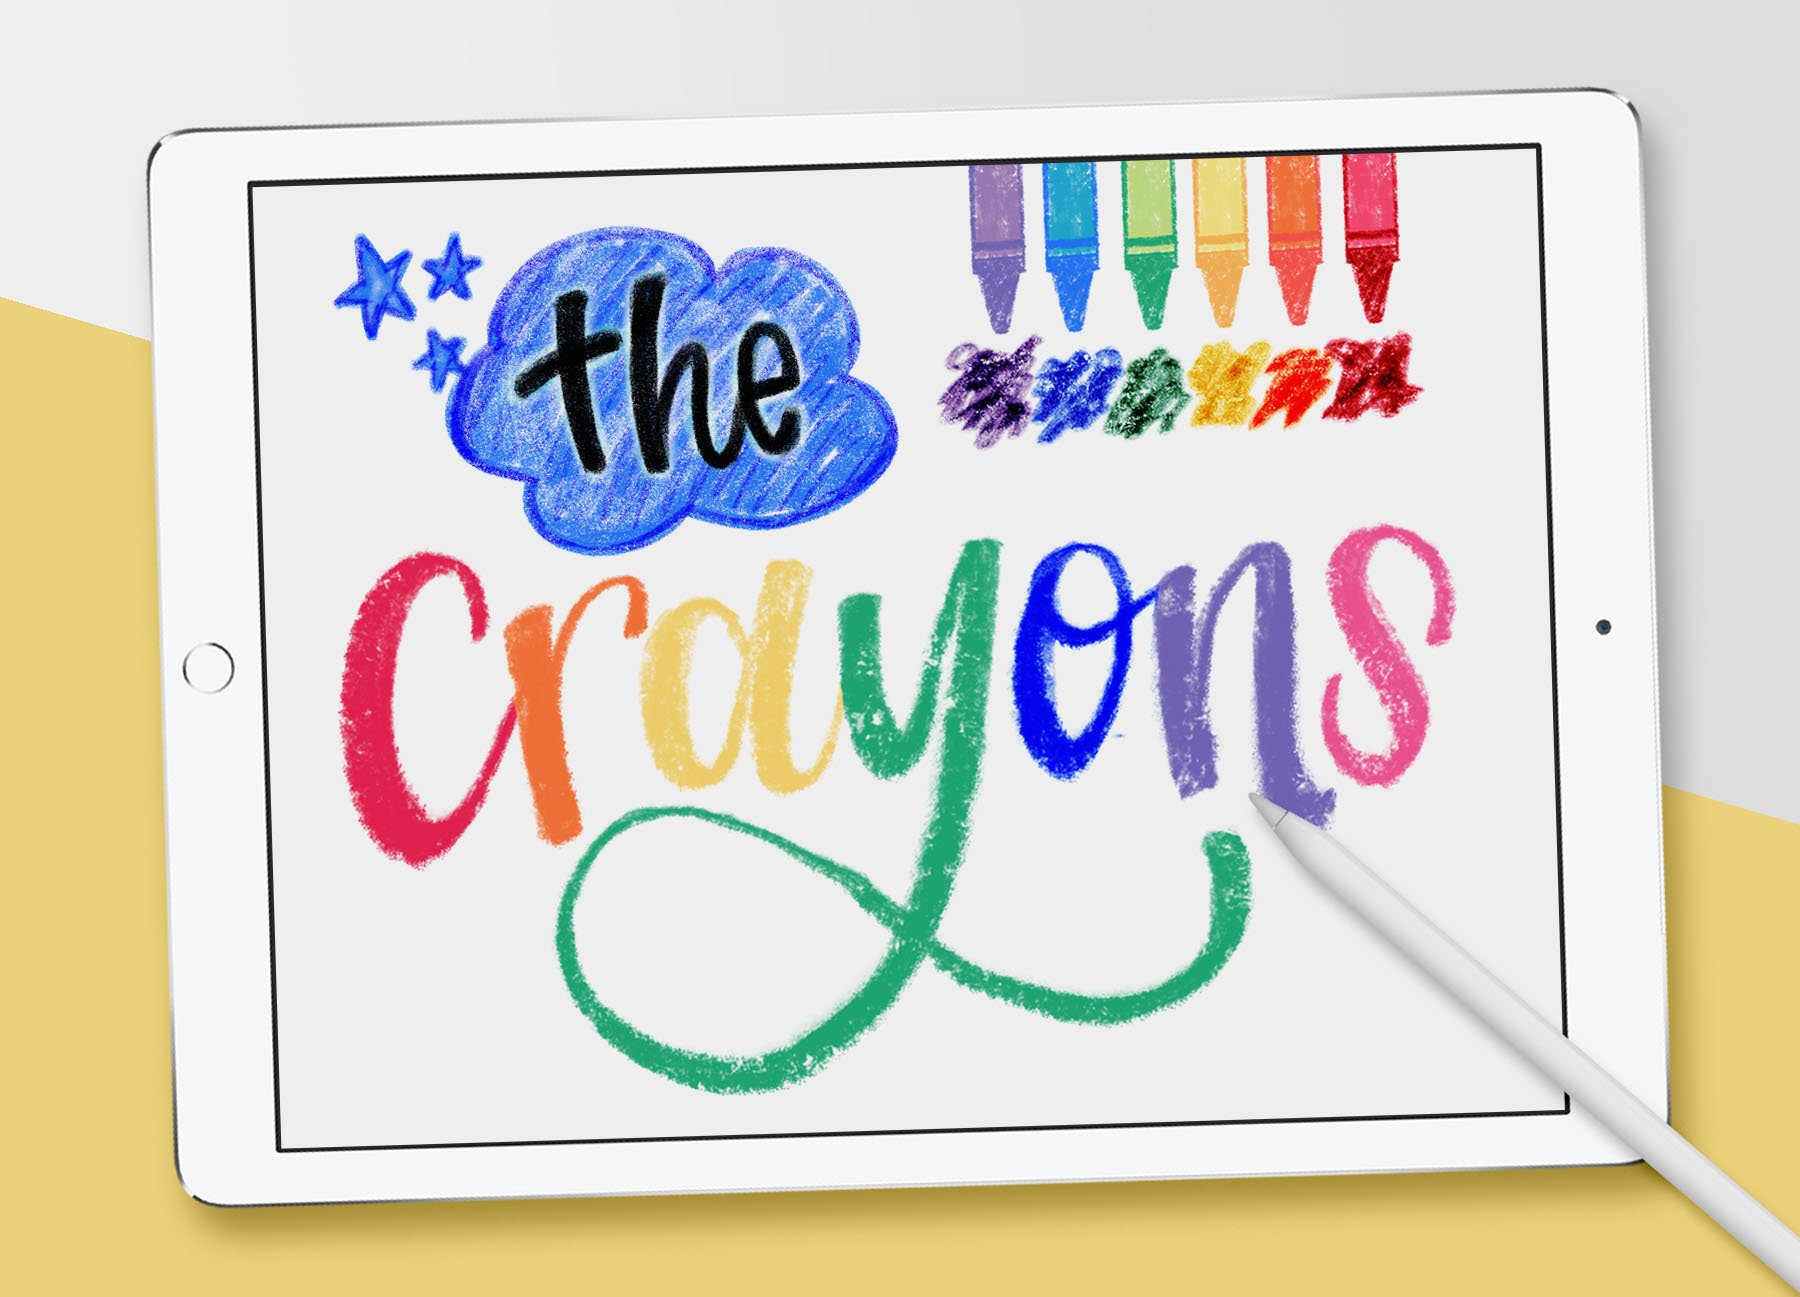 Crayon Procreate Brushes